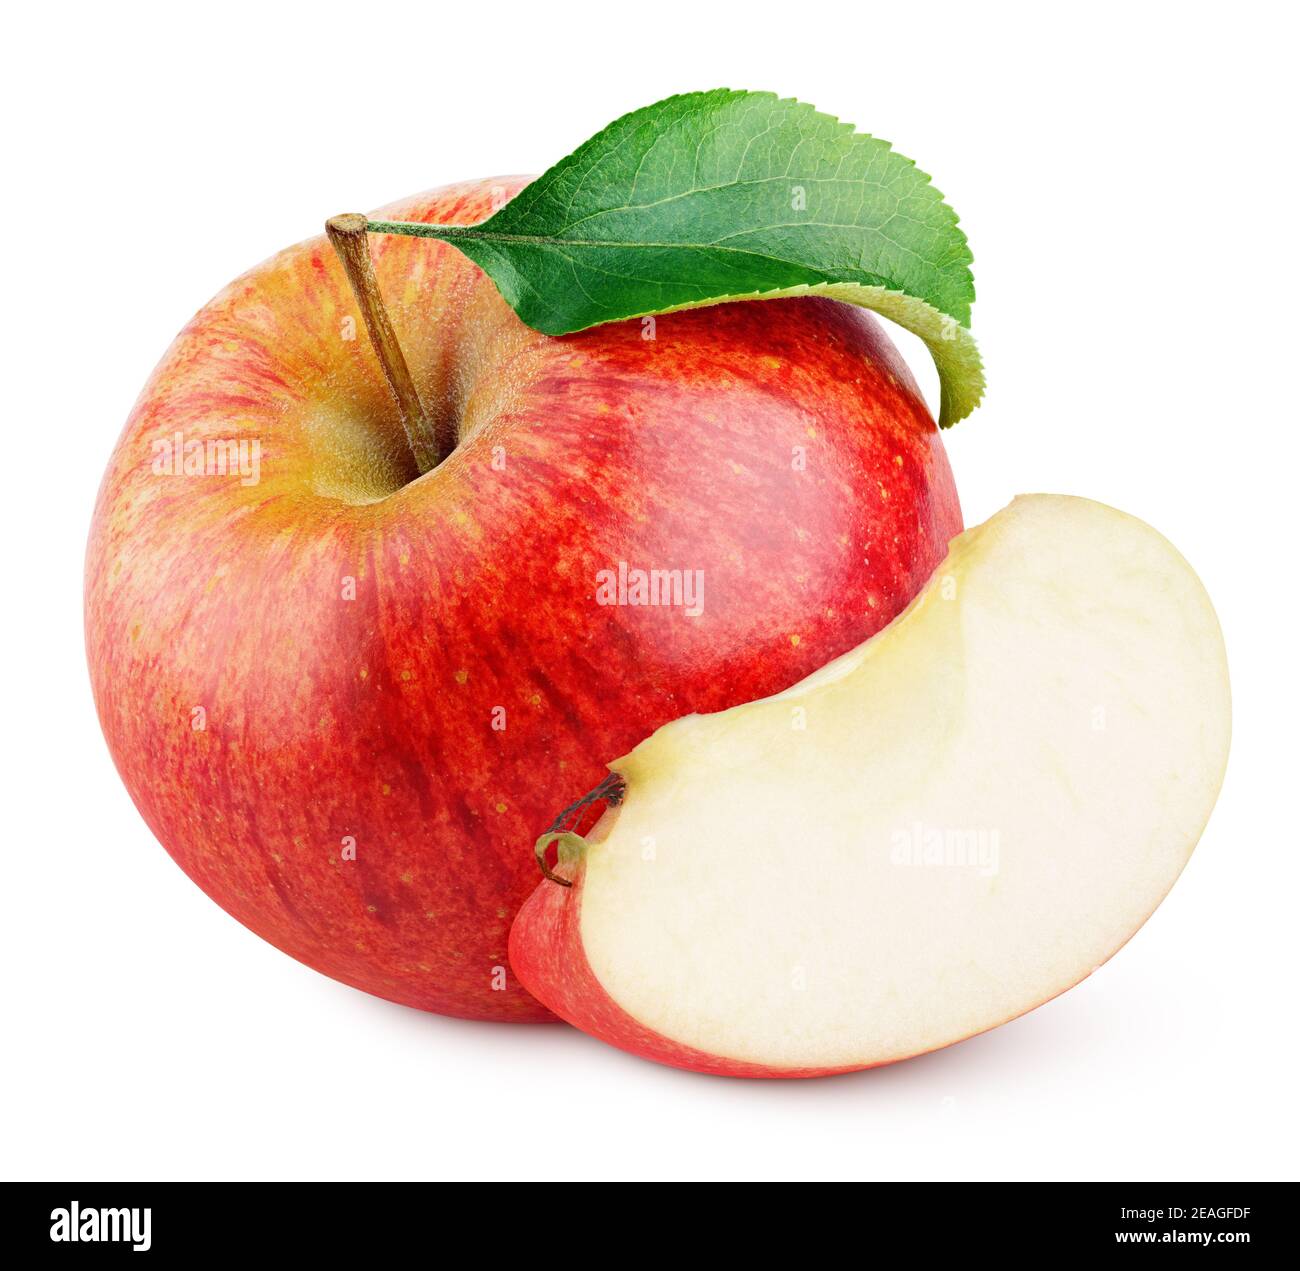 Mela rossa matura con fetta di mela senza semi e. foglia verde isolata su sfondo bianco con tracciato di ritaglio Foto Stock